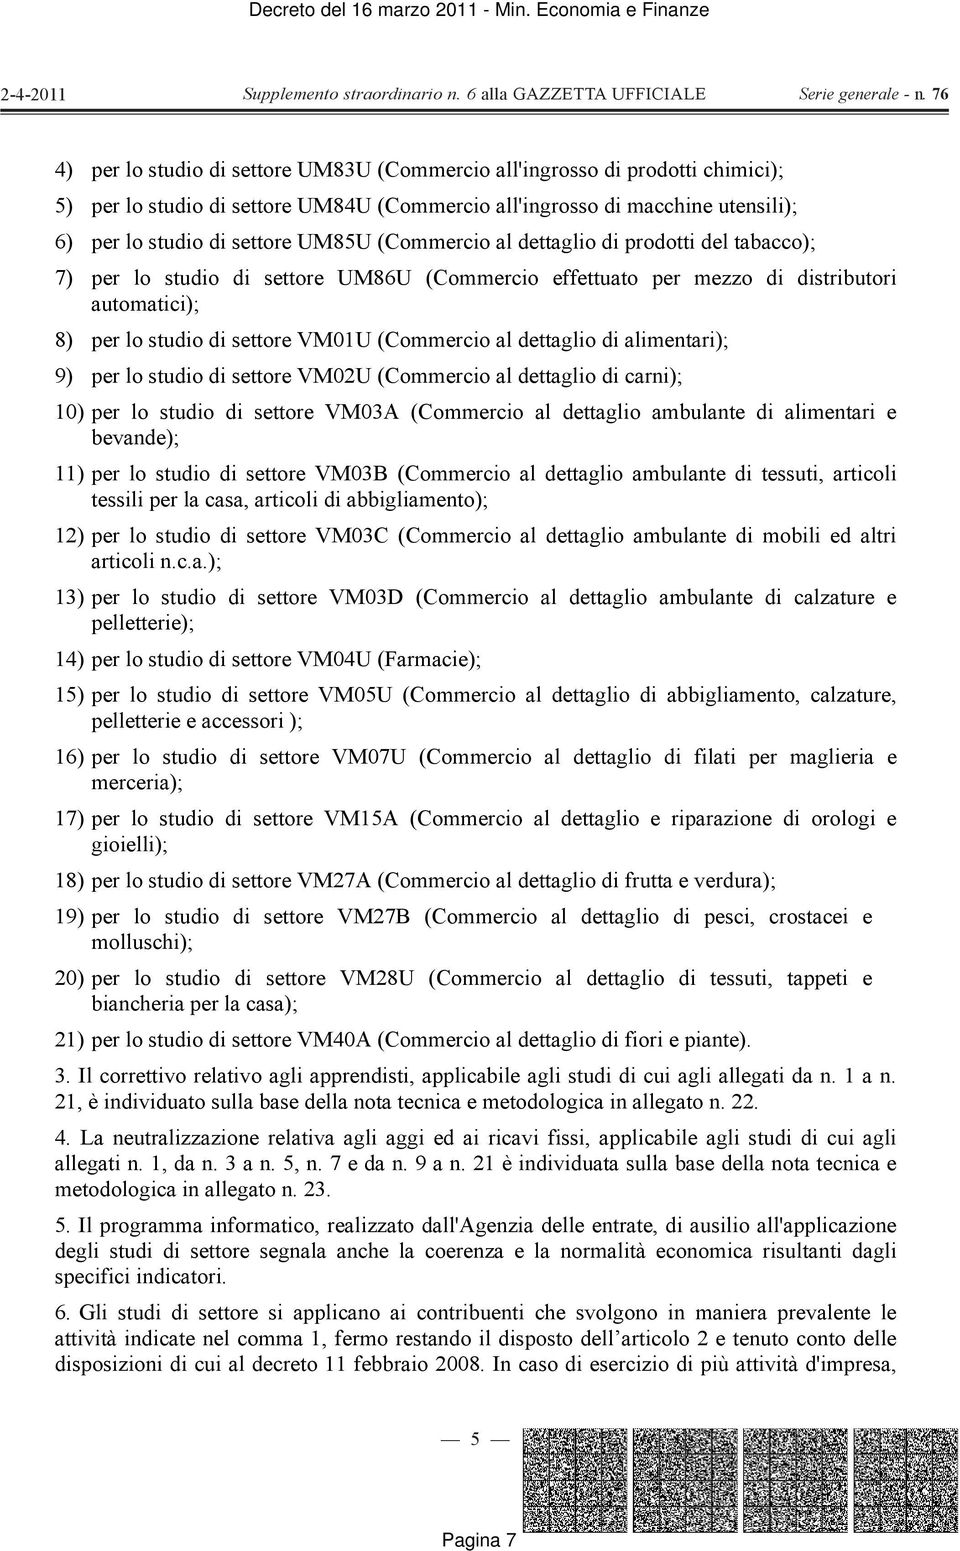 dettaglio di alimentari); 9) per lo studio di settore VM02U (Commercio al dettaglio di carni); 10) per lo studio di settore VM03A (Commercio al dettaglio ambulante di alimentari e bevande); 11) per